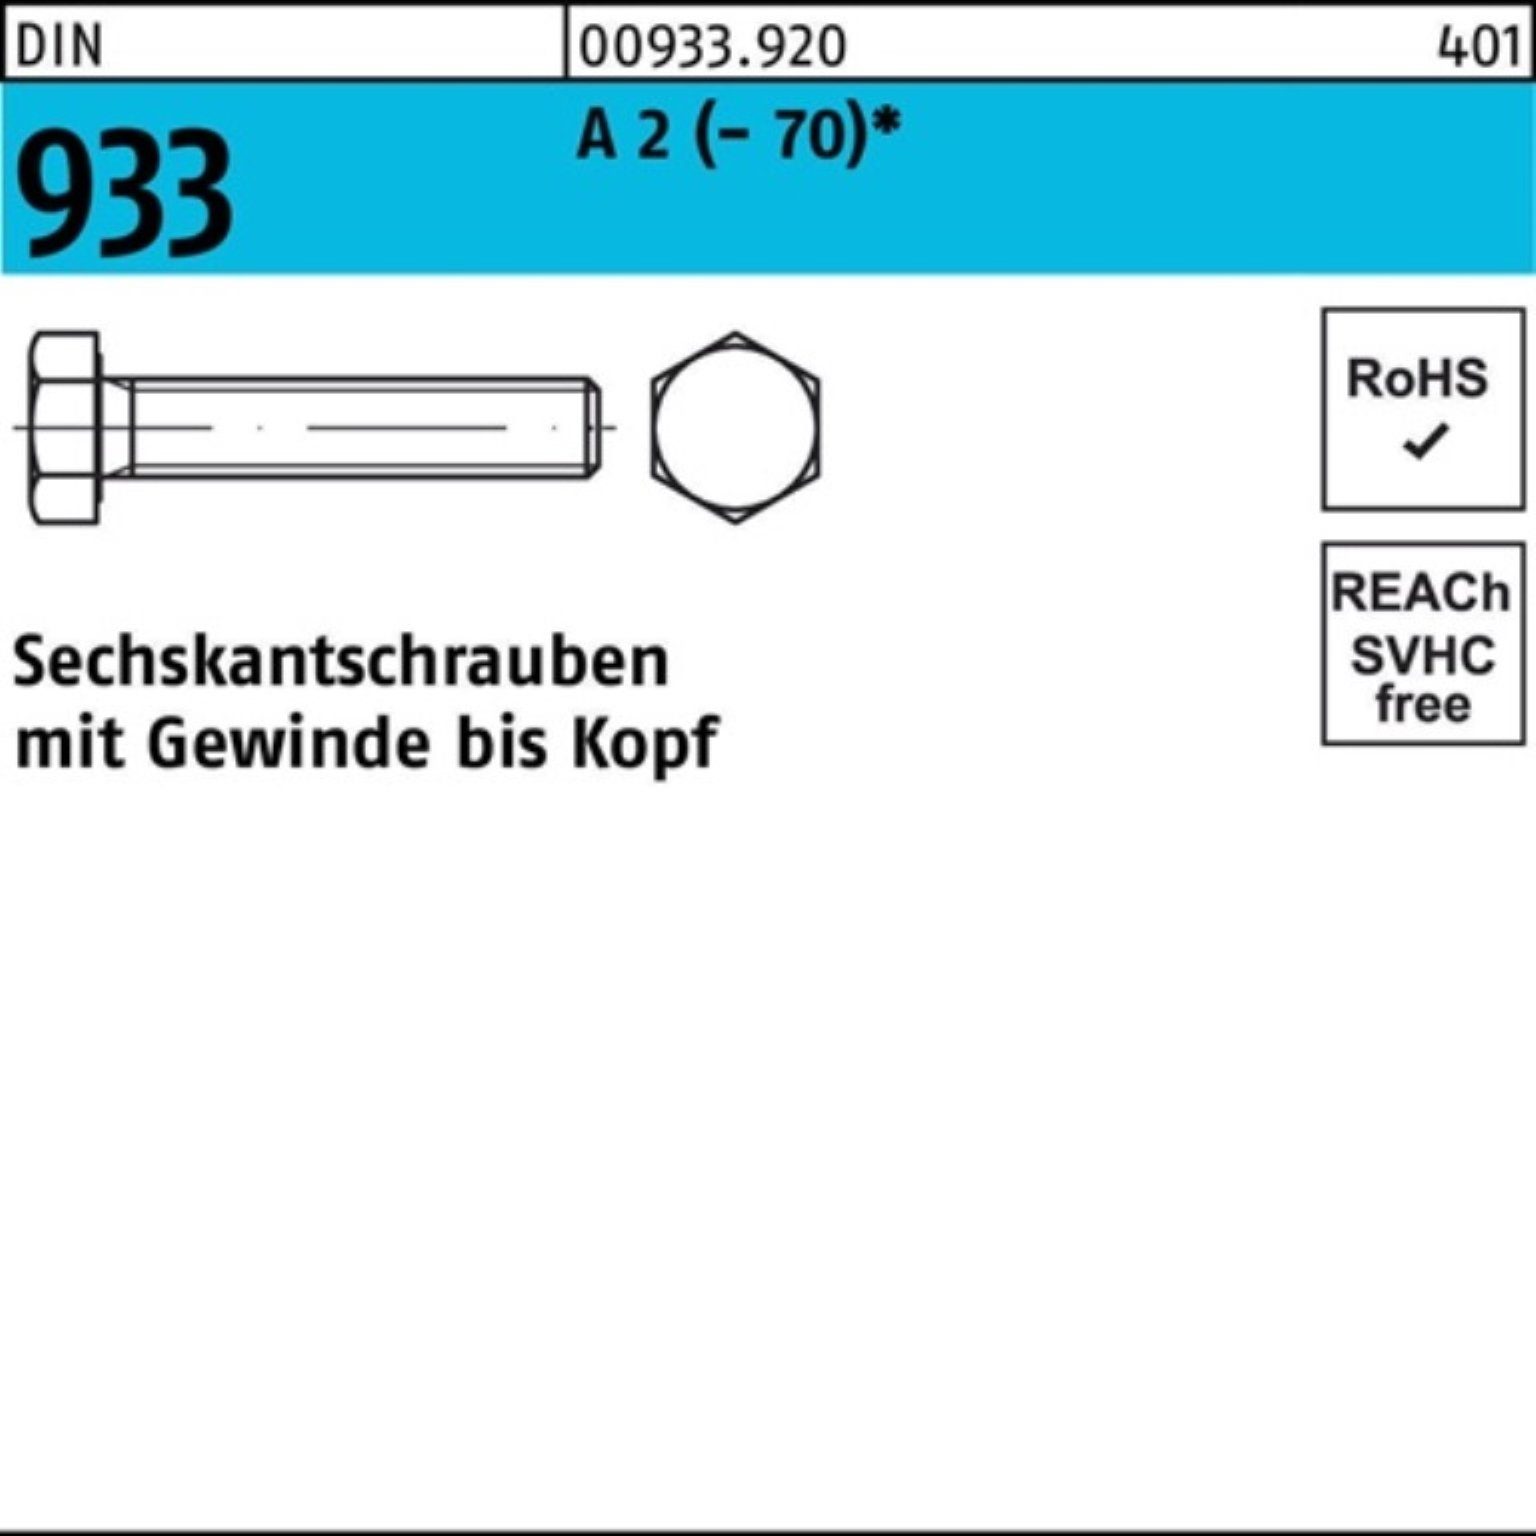 A DIN D Pack VG 100er 20 100 2 (70) Stück Sechskantschraube 933 Sechskantschraube Reyher M8x